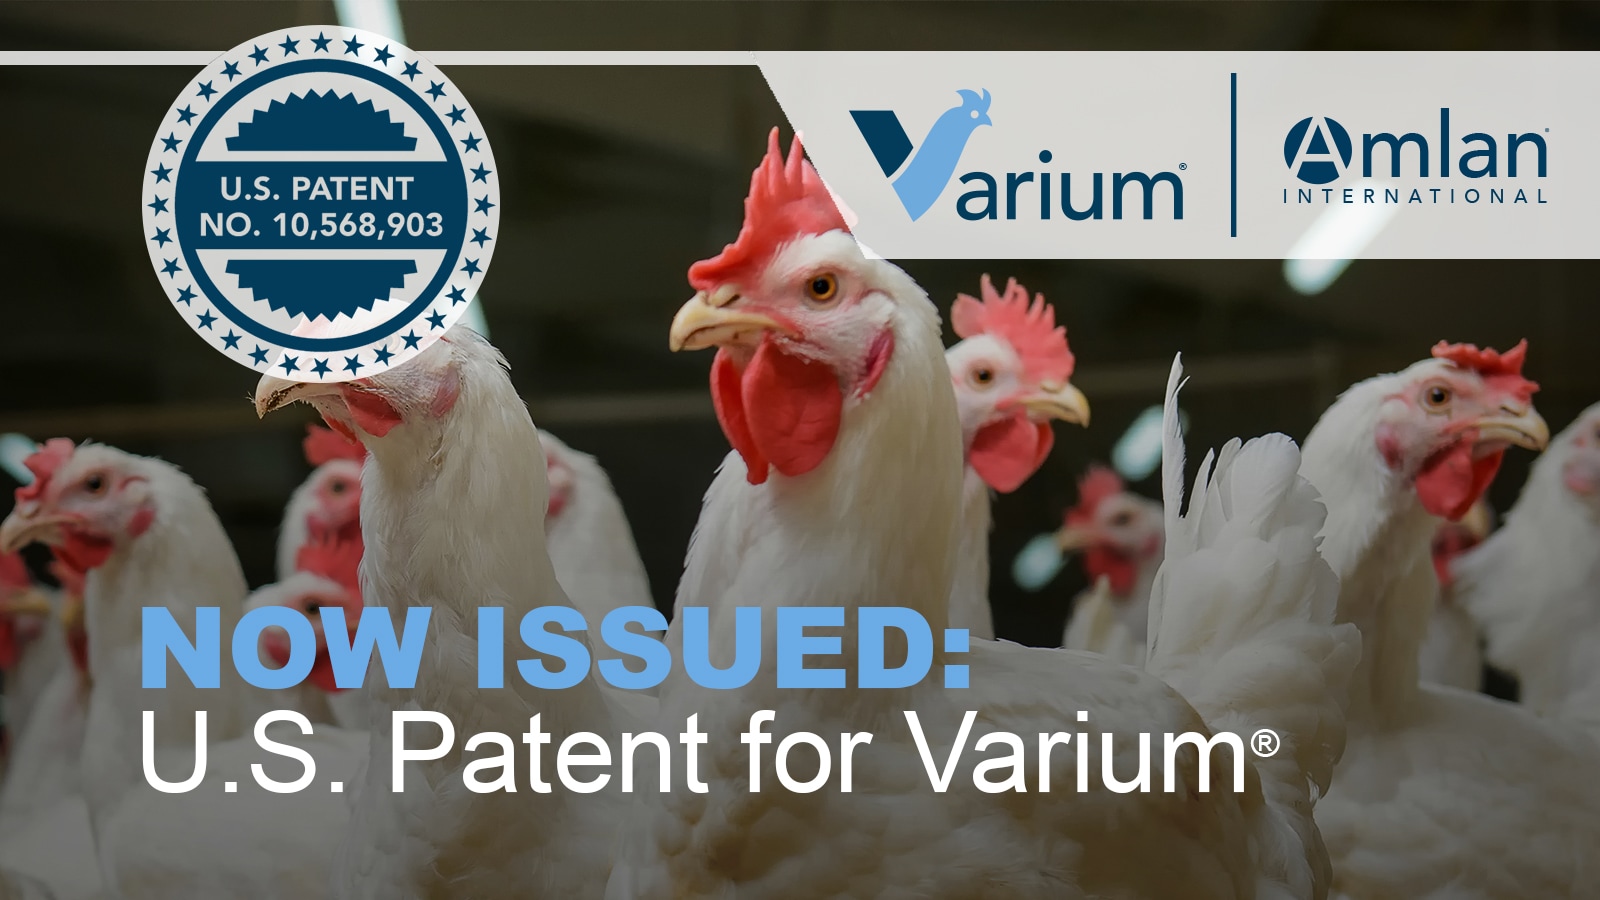 Varium Announcement